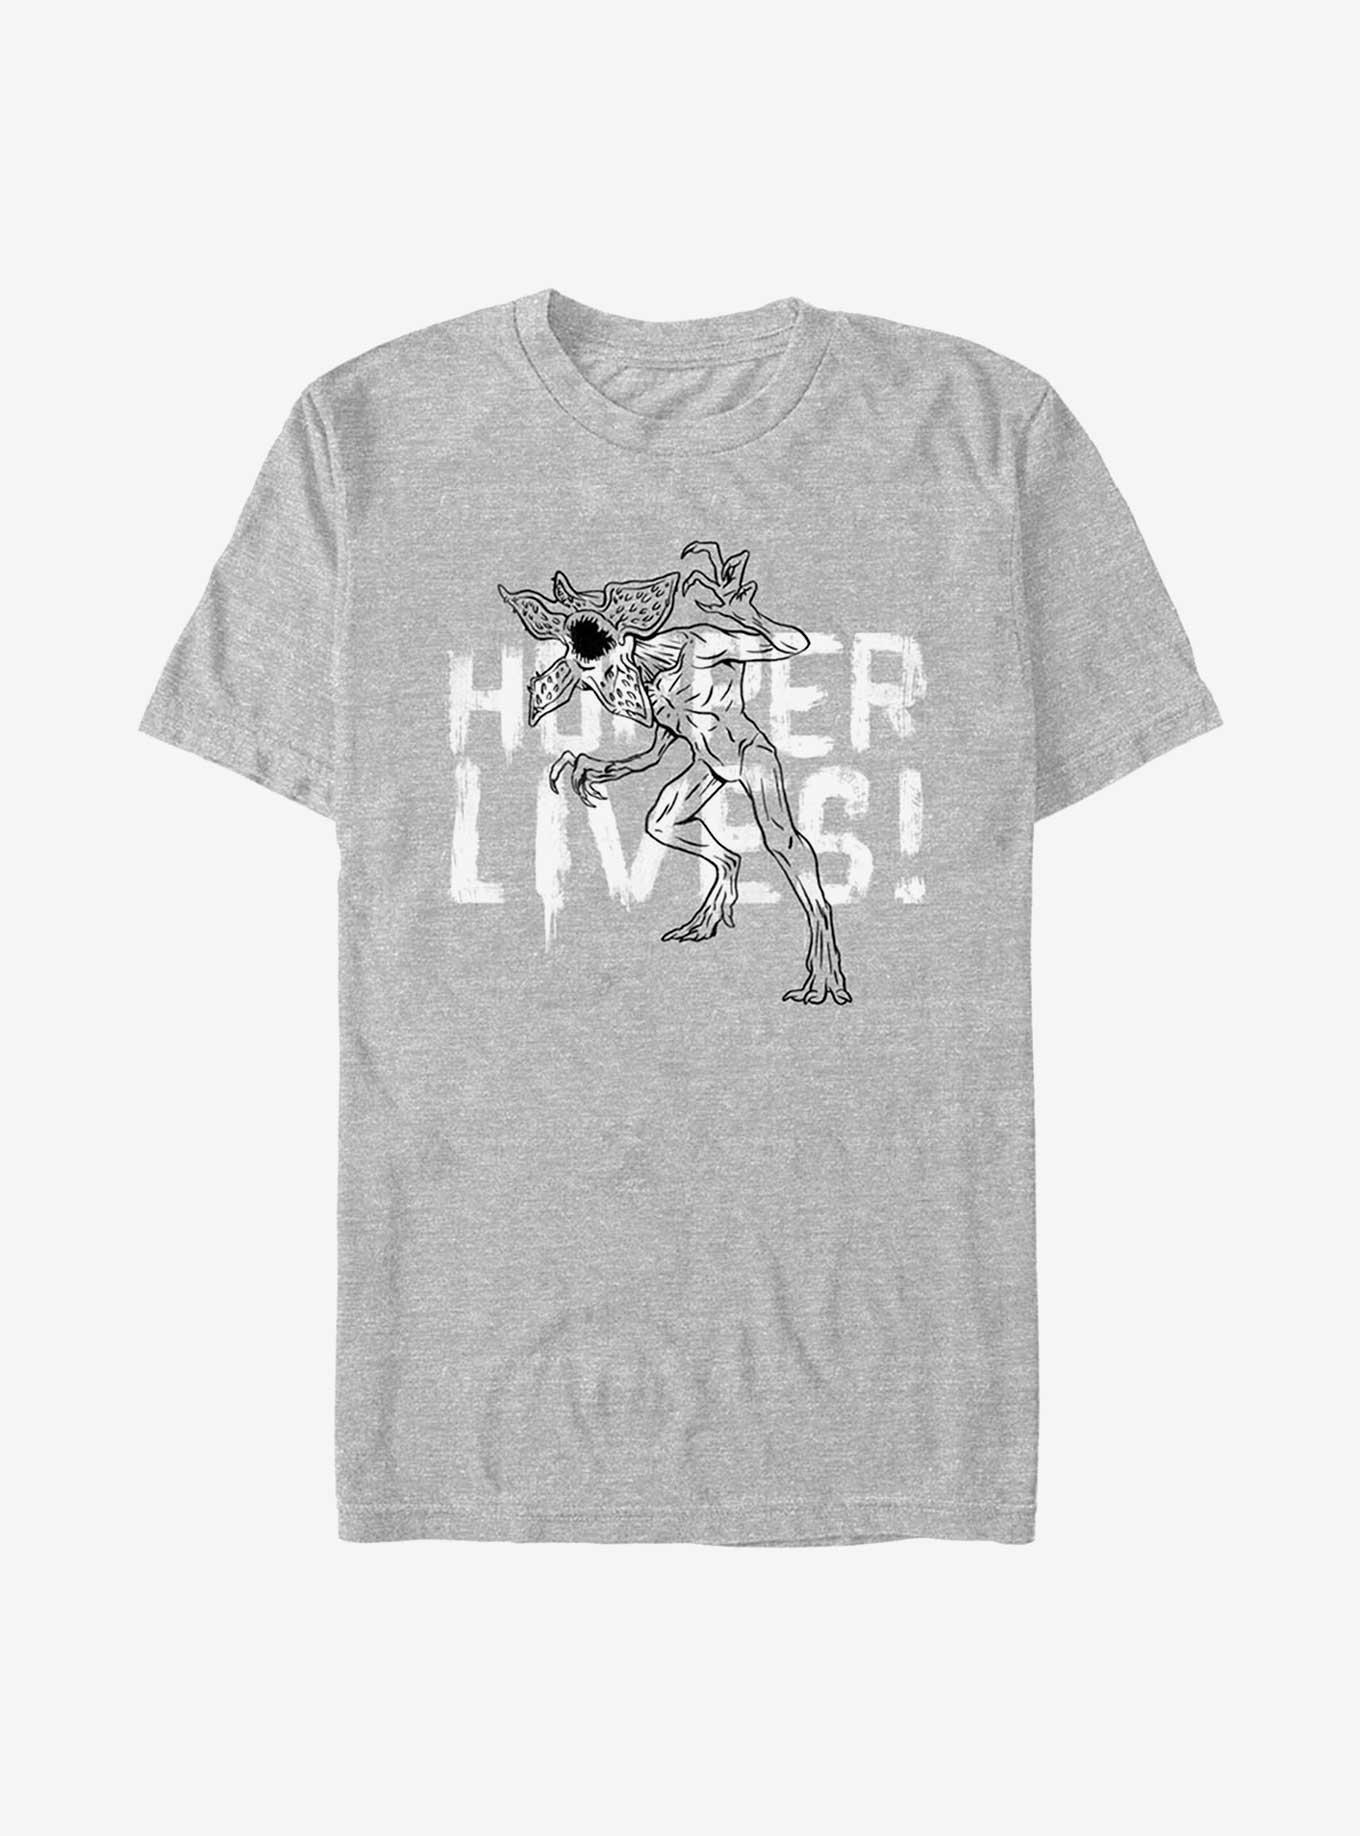 Stranger Things Hopper Lives T-Shirt